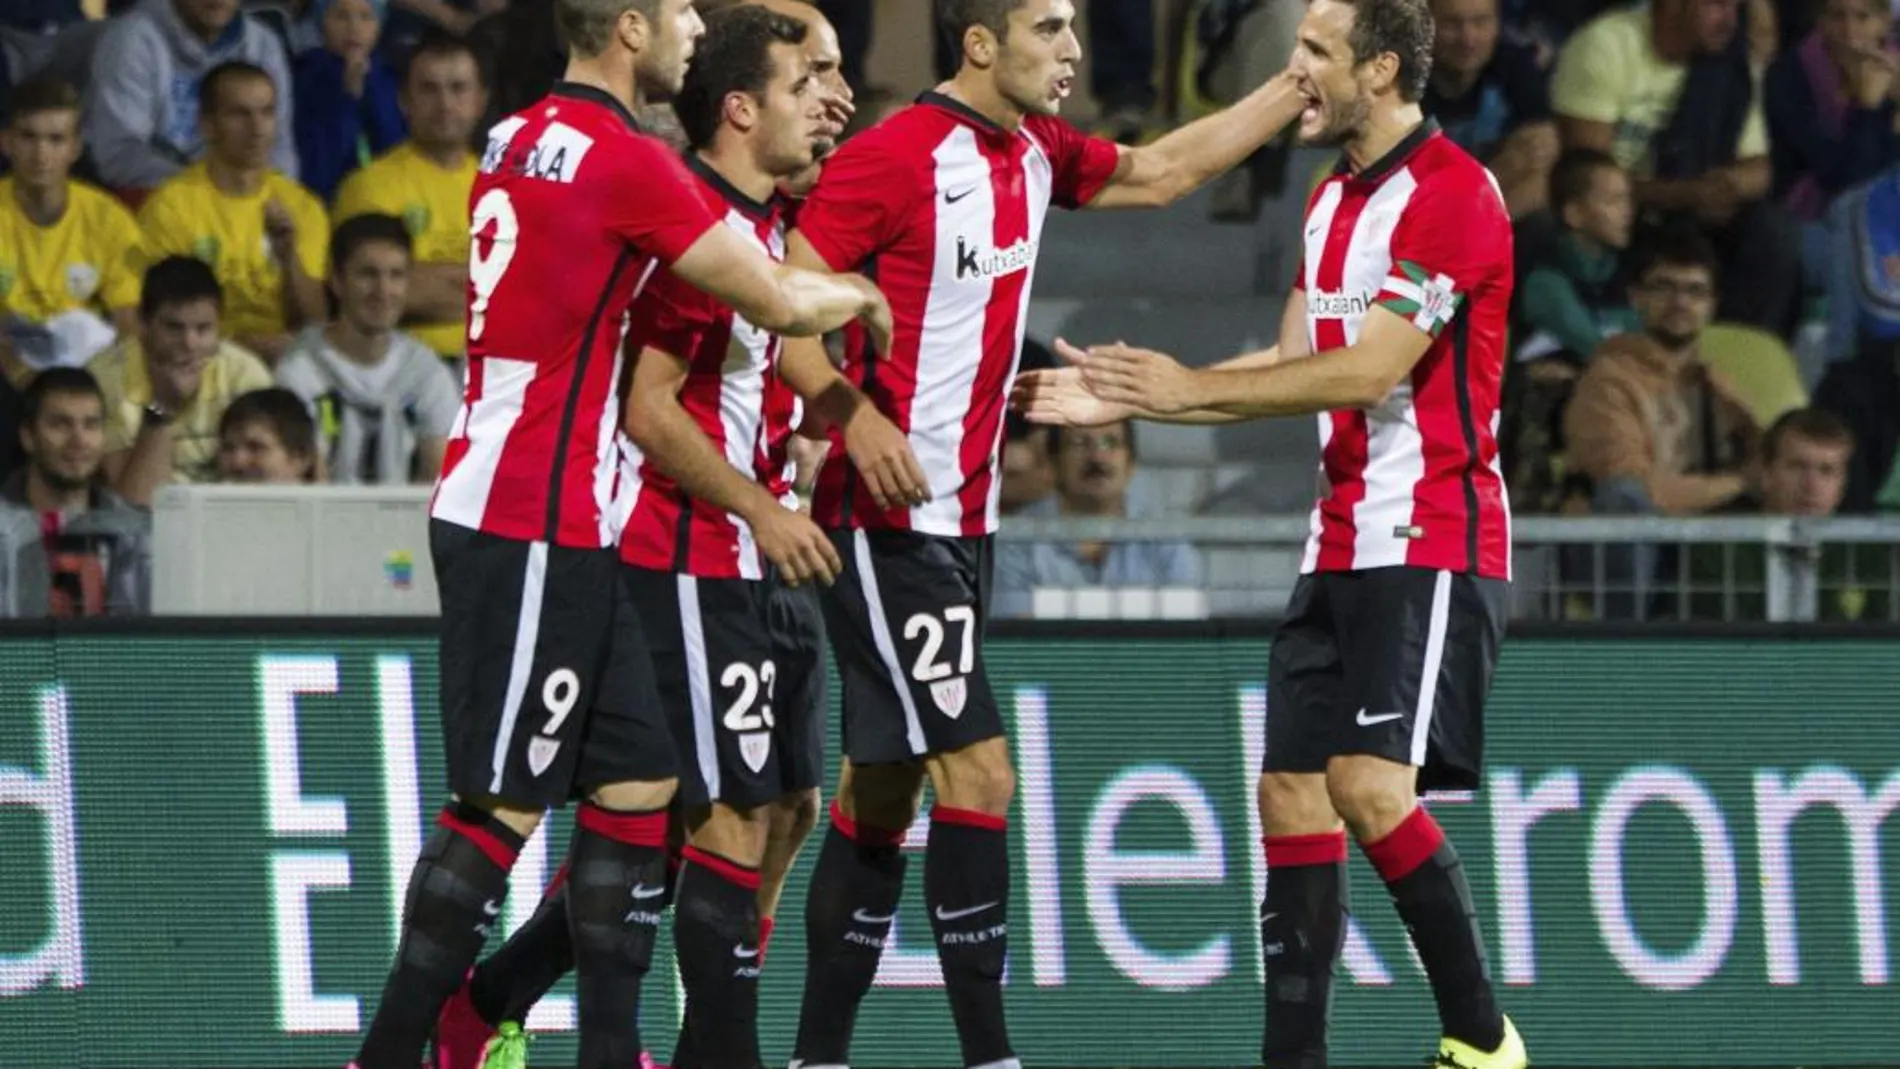 Los jugadores del Athletic Club de Bilbao celebran el gol conseguido ante el MSK Zilina